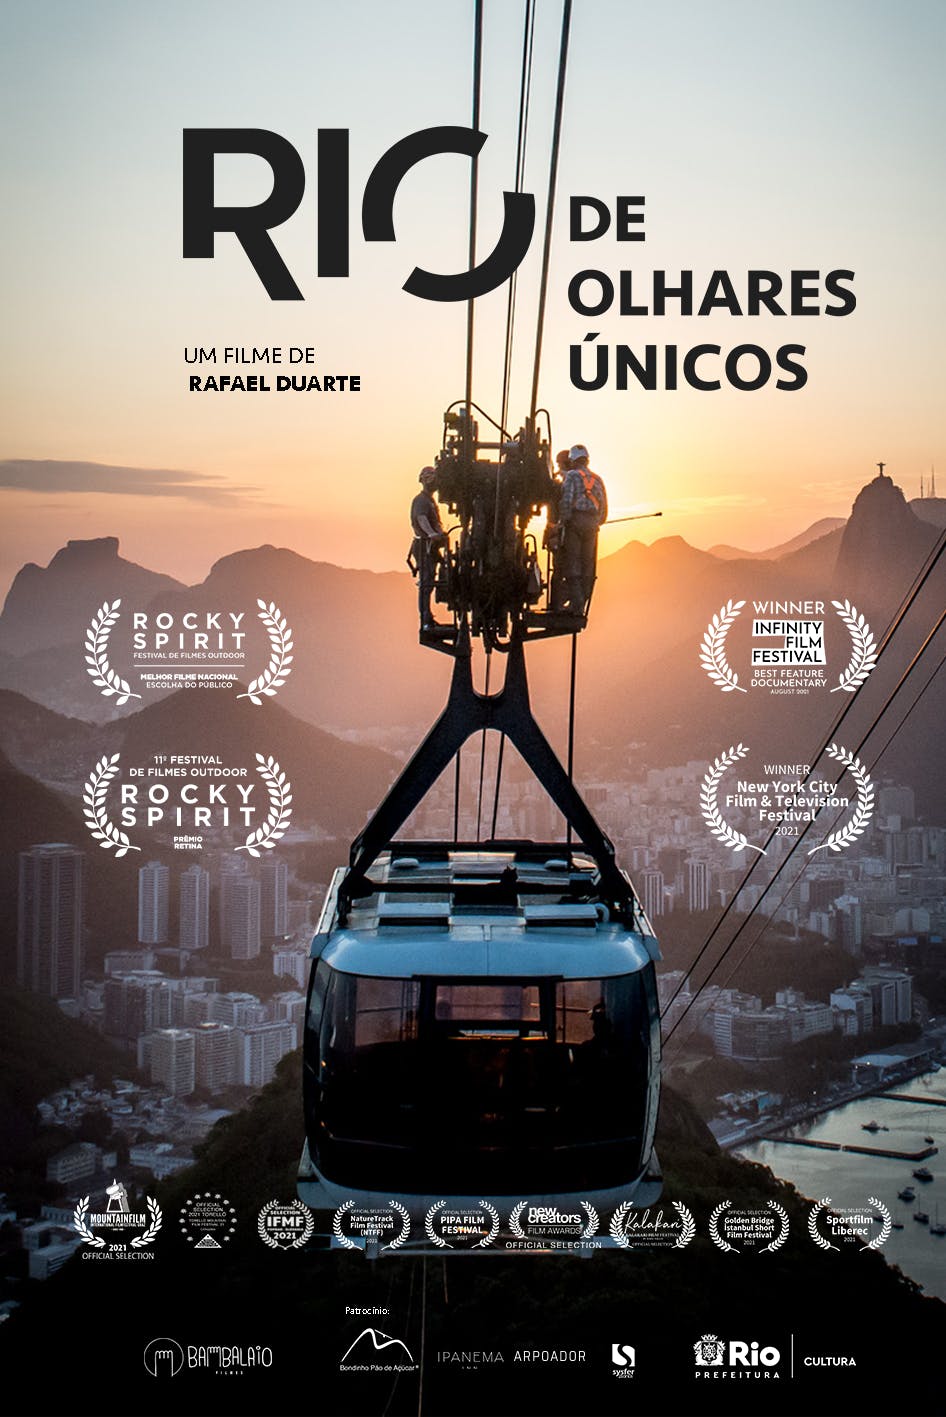 RIO by unique sights